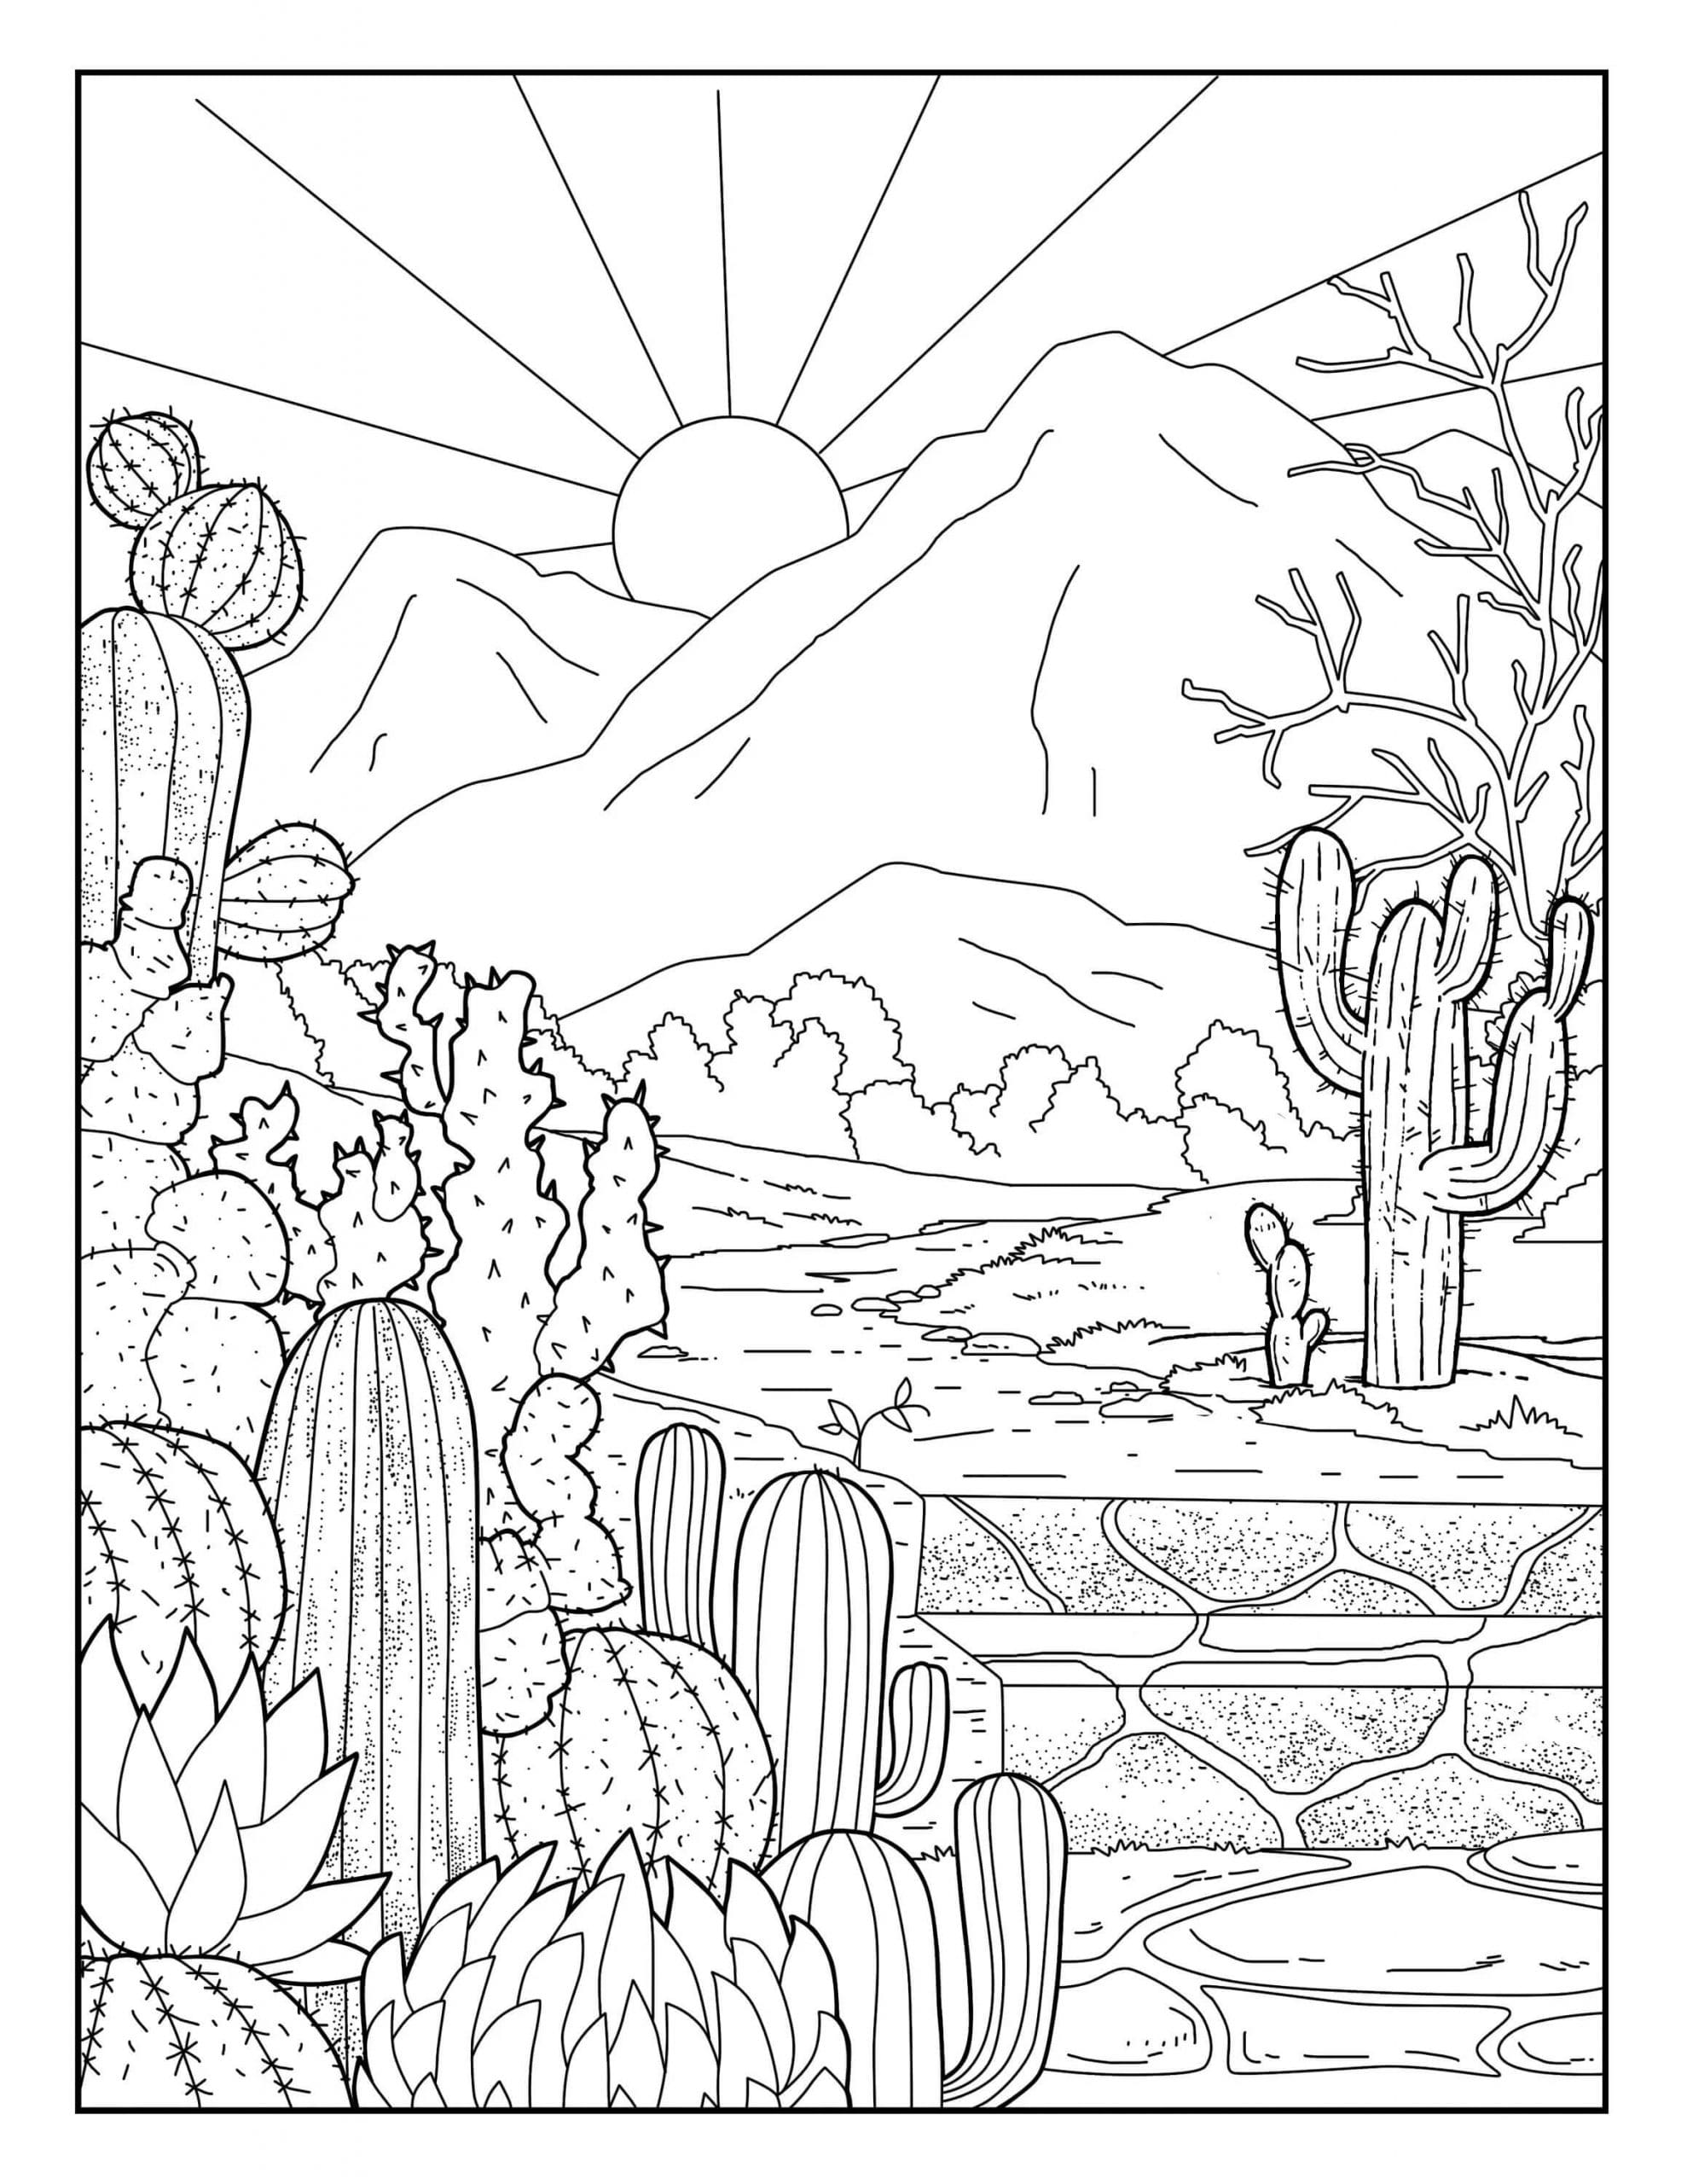 Kolorowanka Ogród kaktusów i słońce